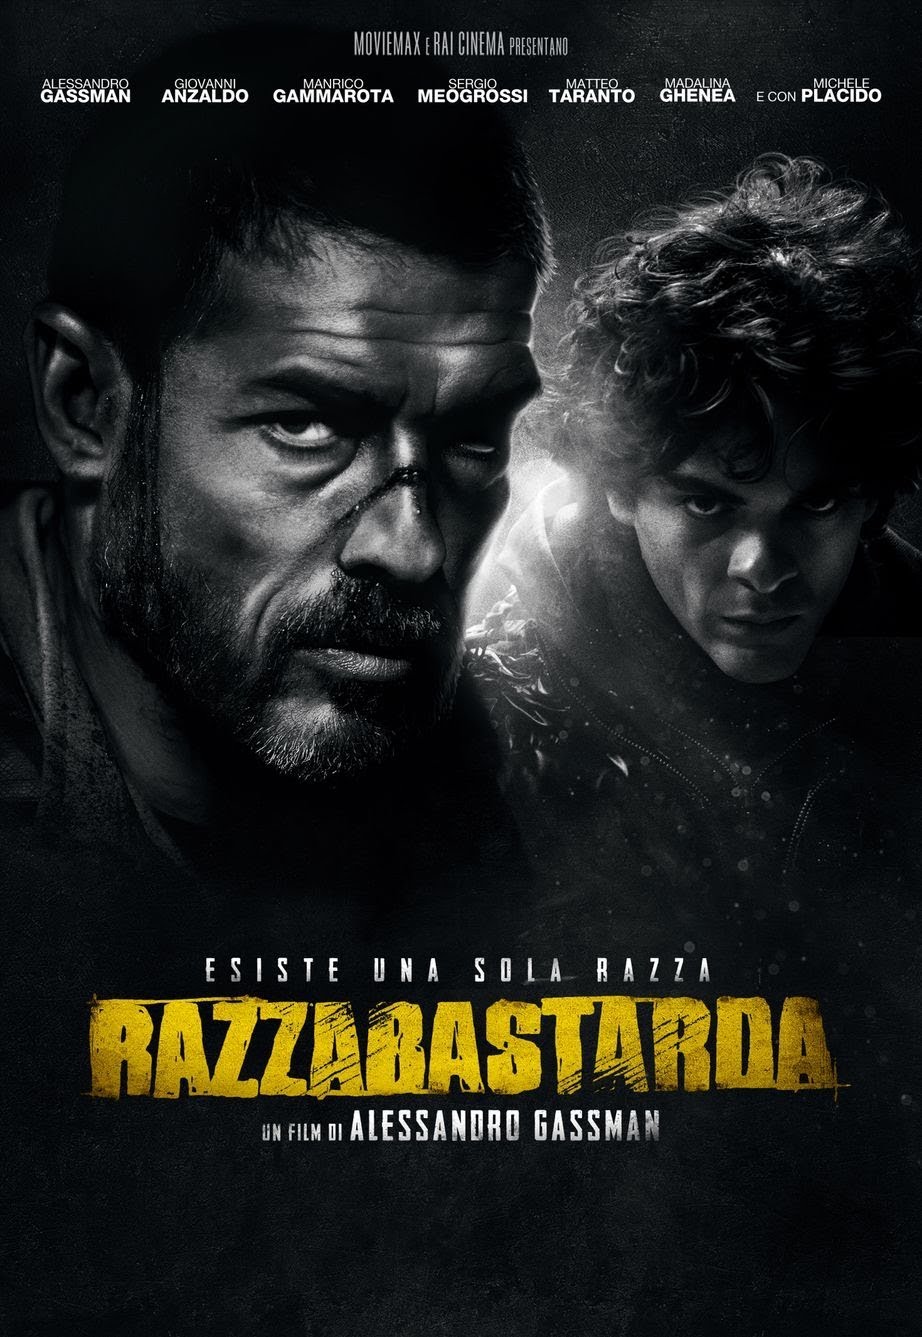 RazzaBastarda [B/N] (2012)